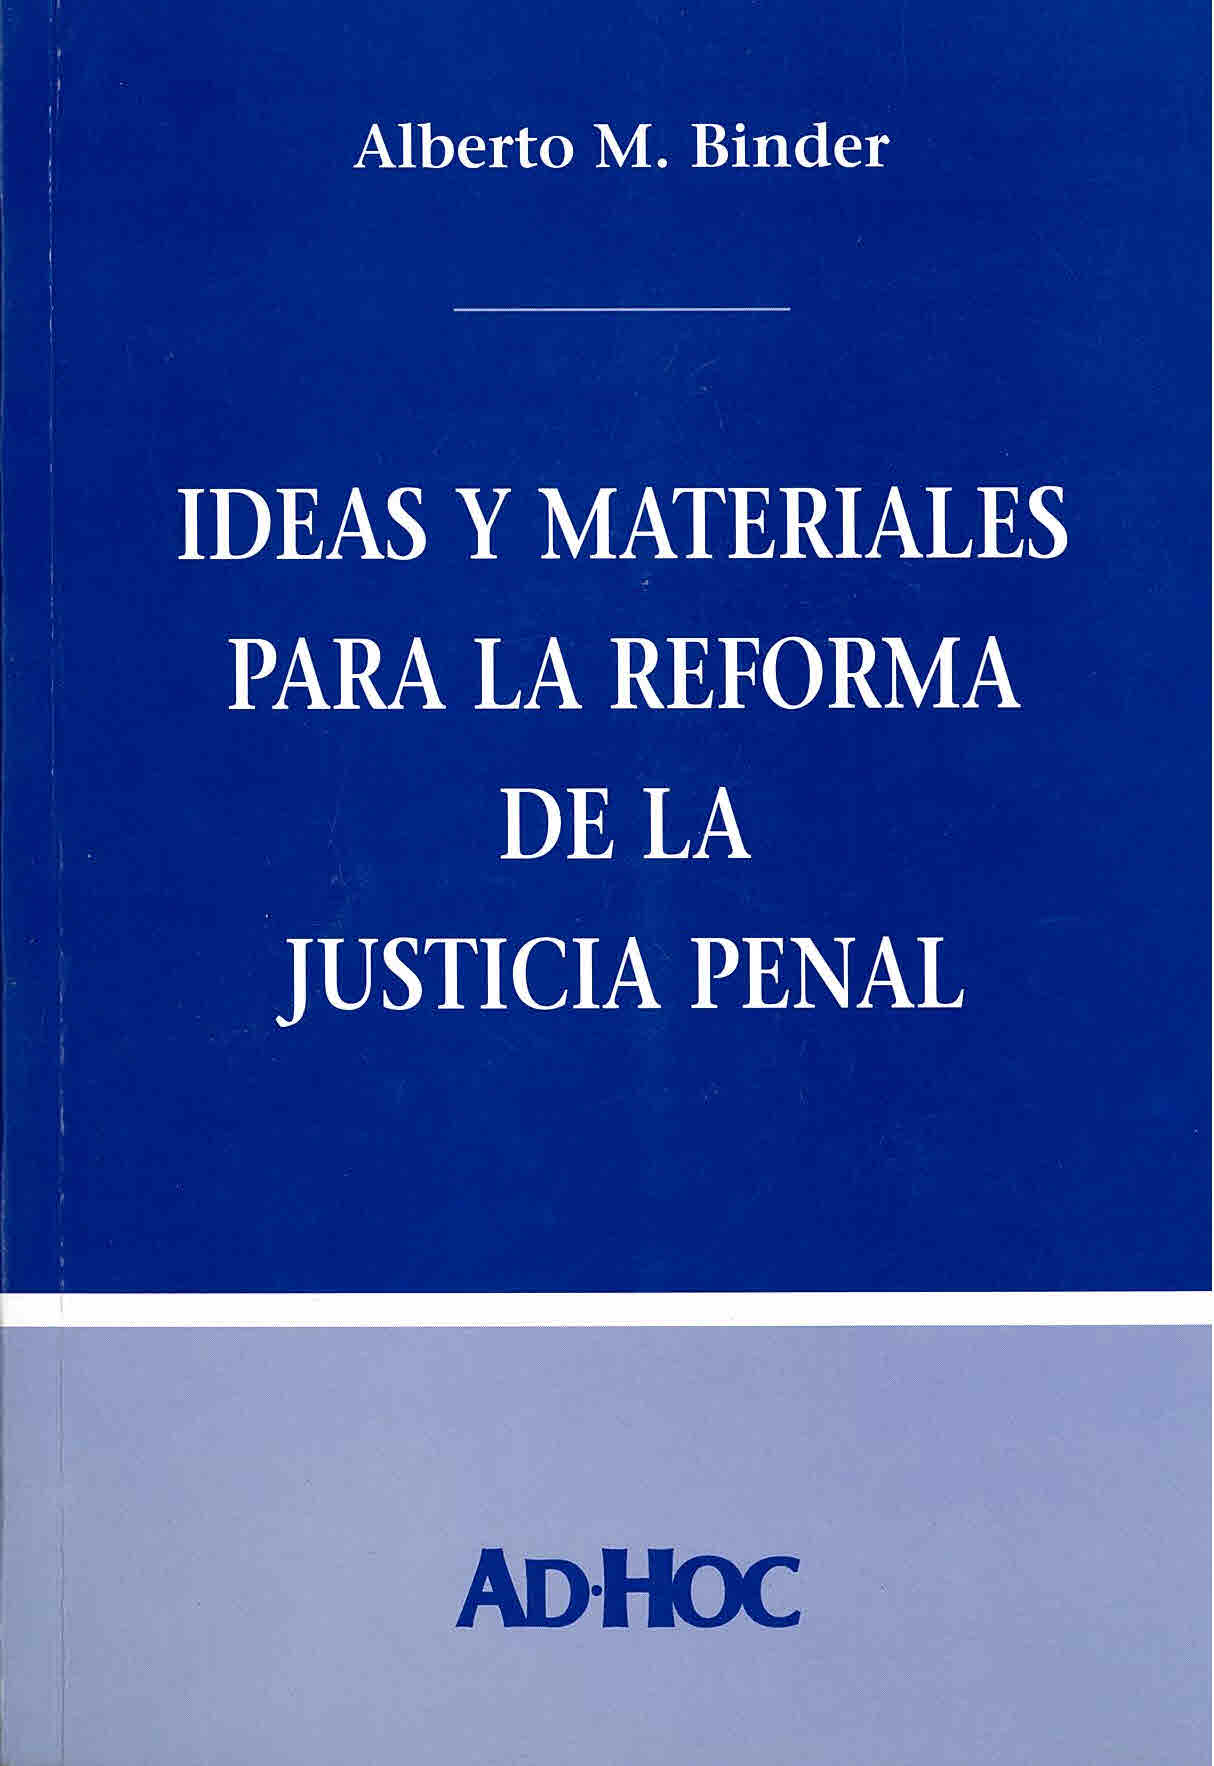 Ideas y materiales para la reforma de la justicia penal